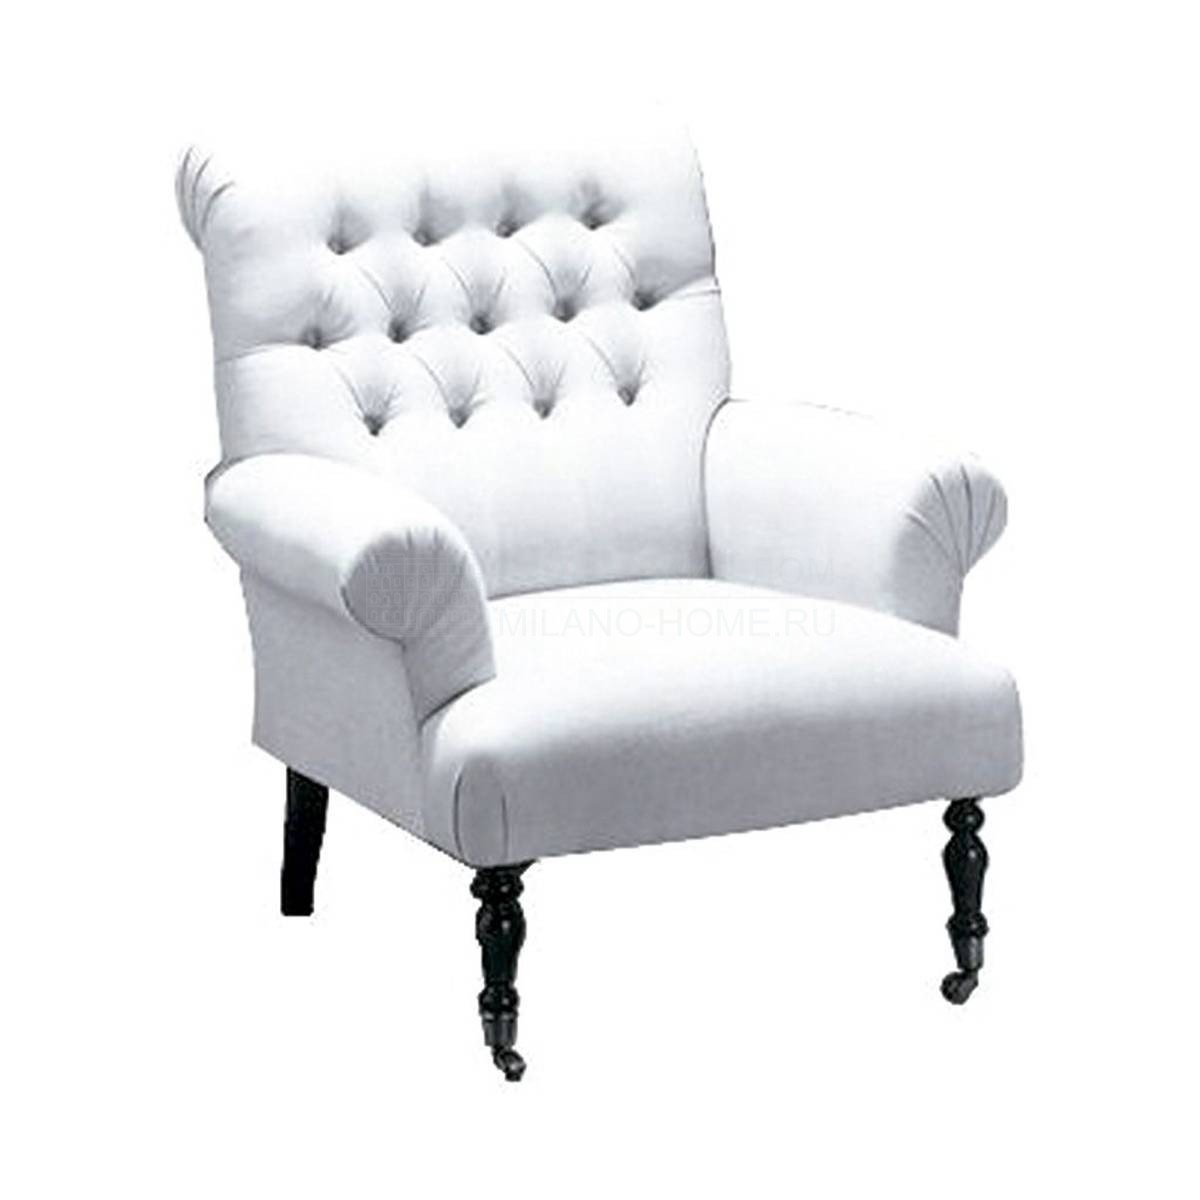 Кресло Z-8103 armchair из Испании фабрики GUADARTE